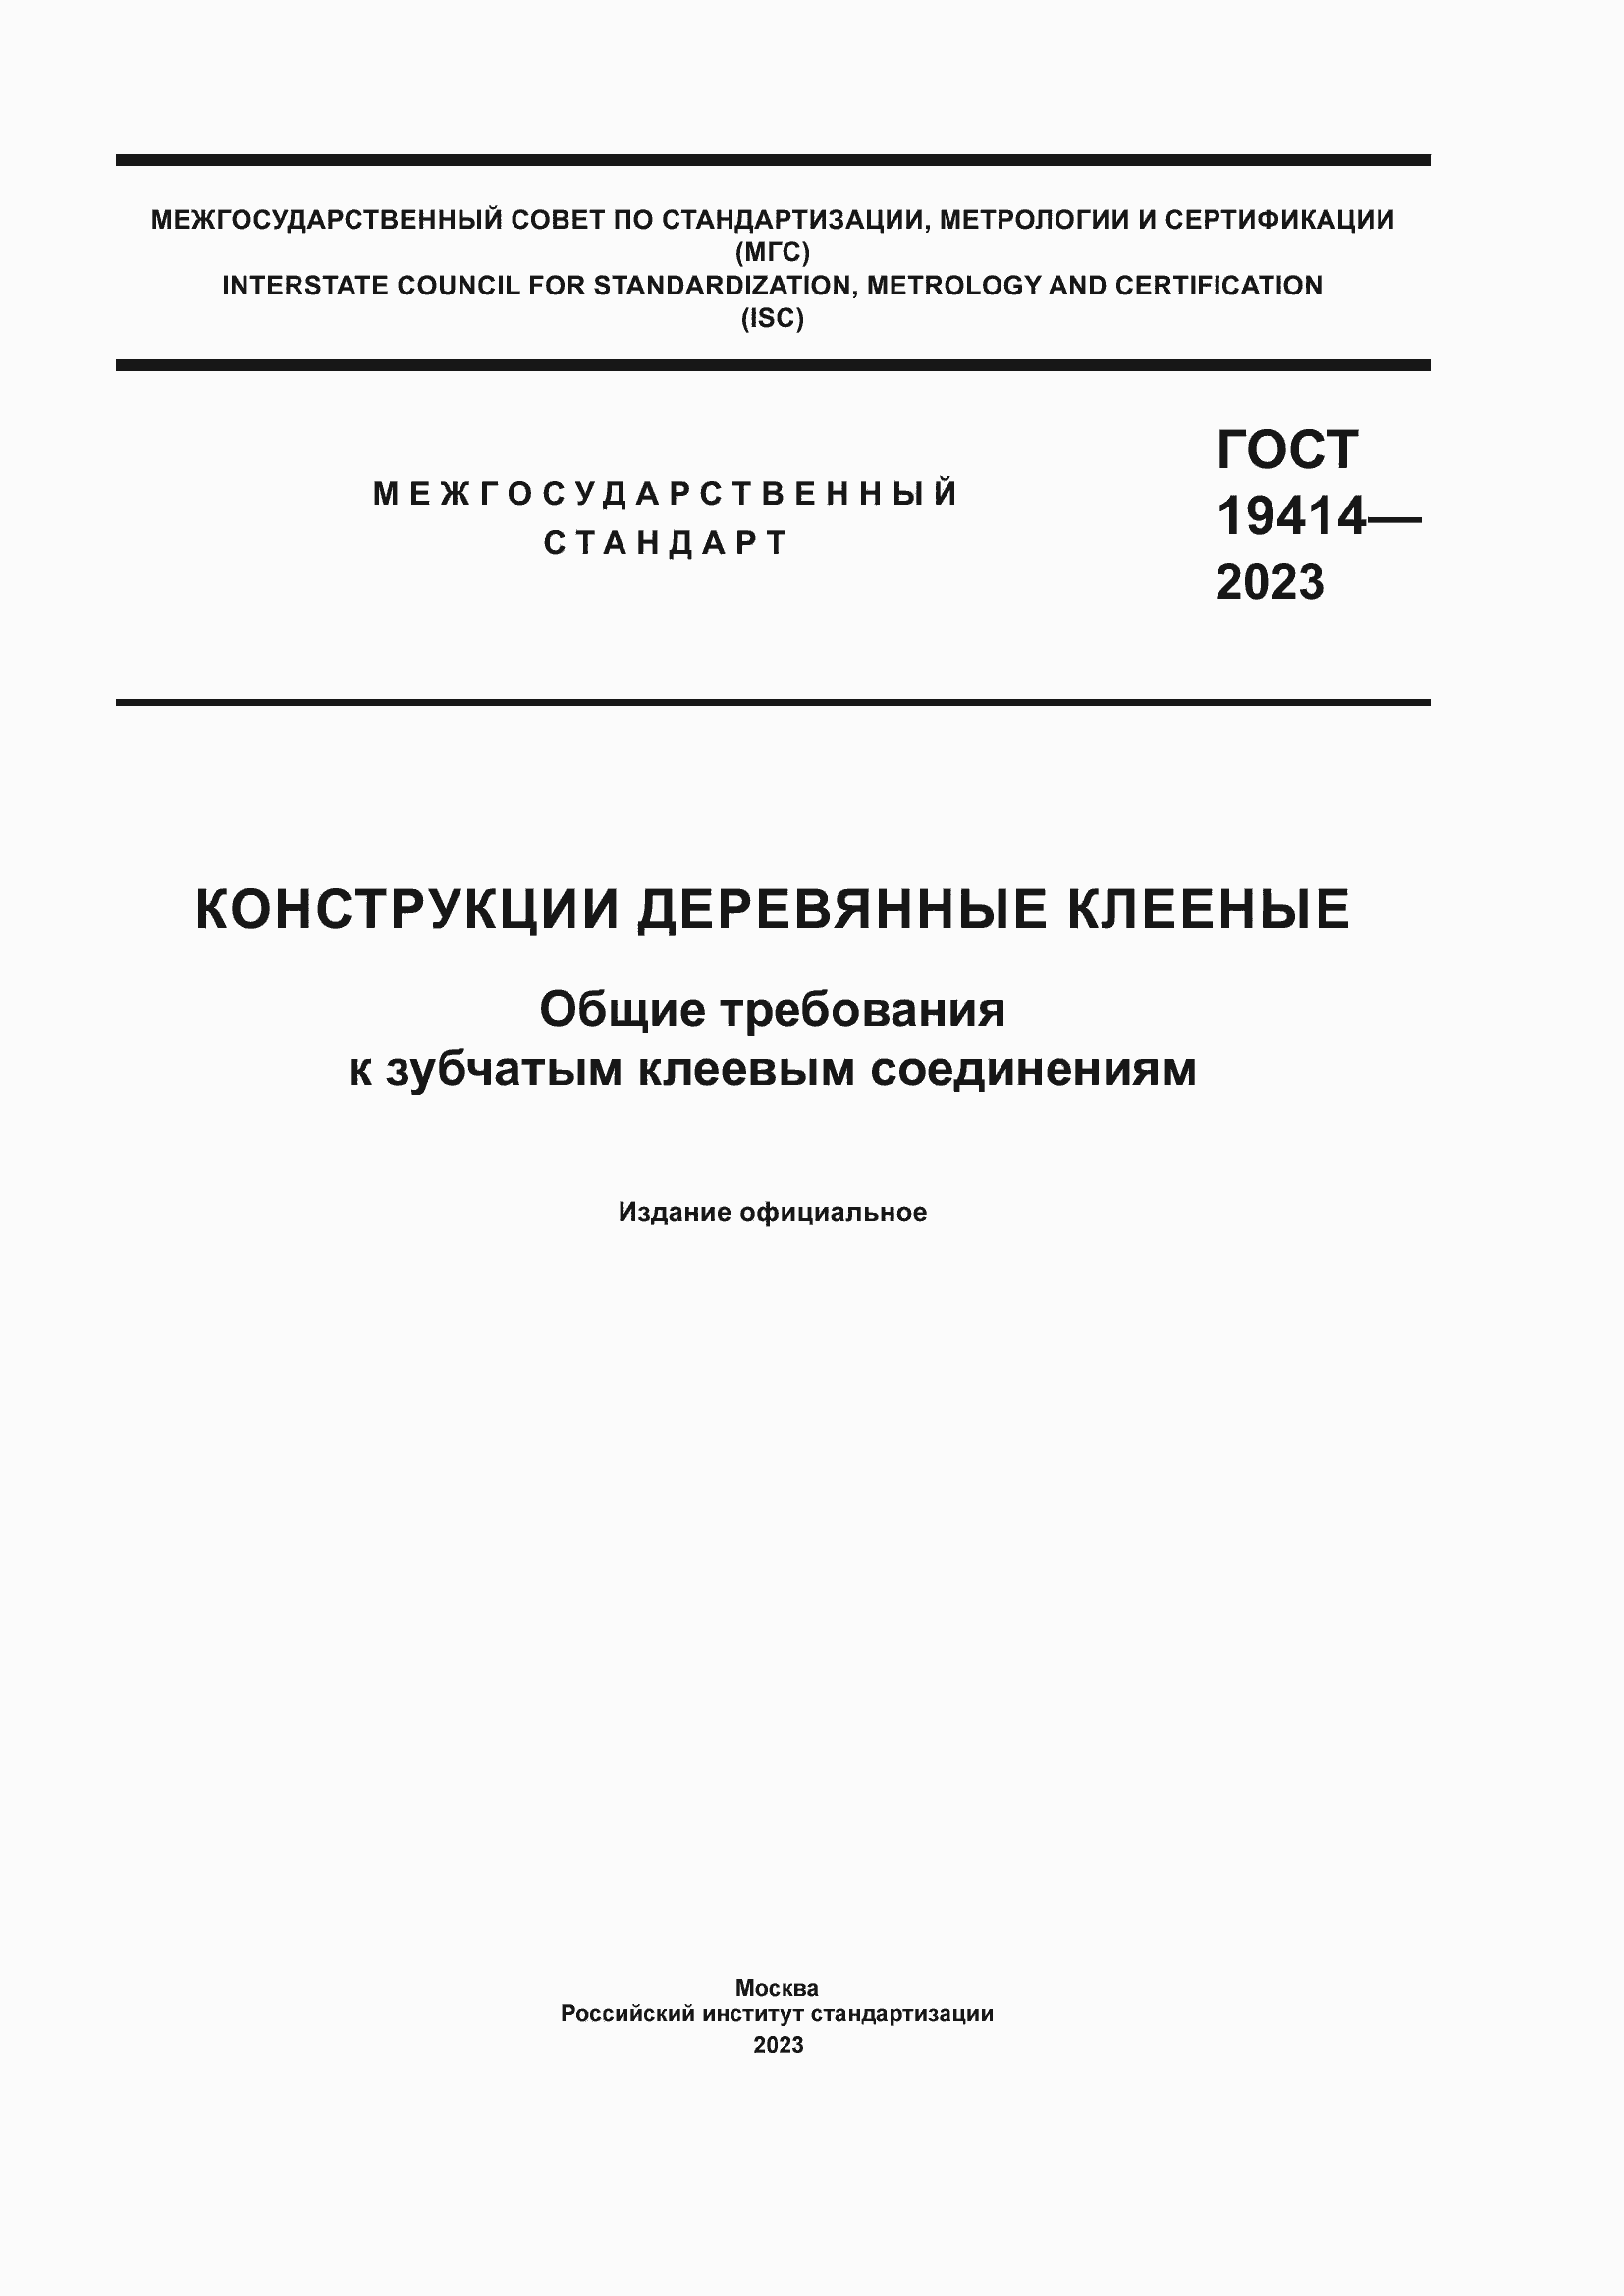  19414-2023.  1